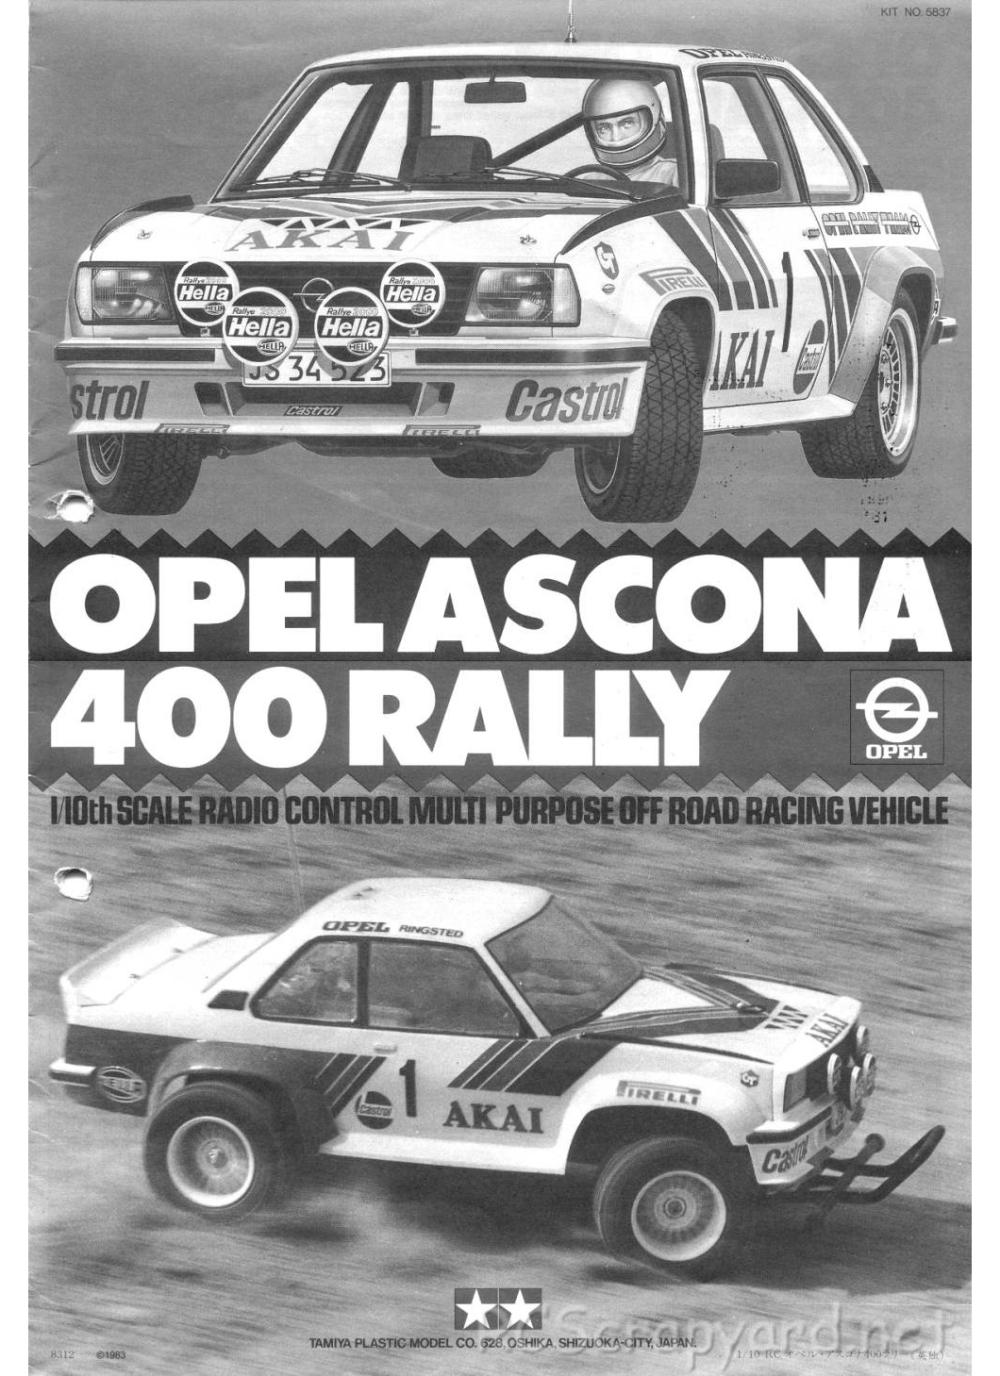 Tamiya - Opel Ascona 400 Rally - 58037 - Manual